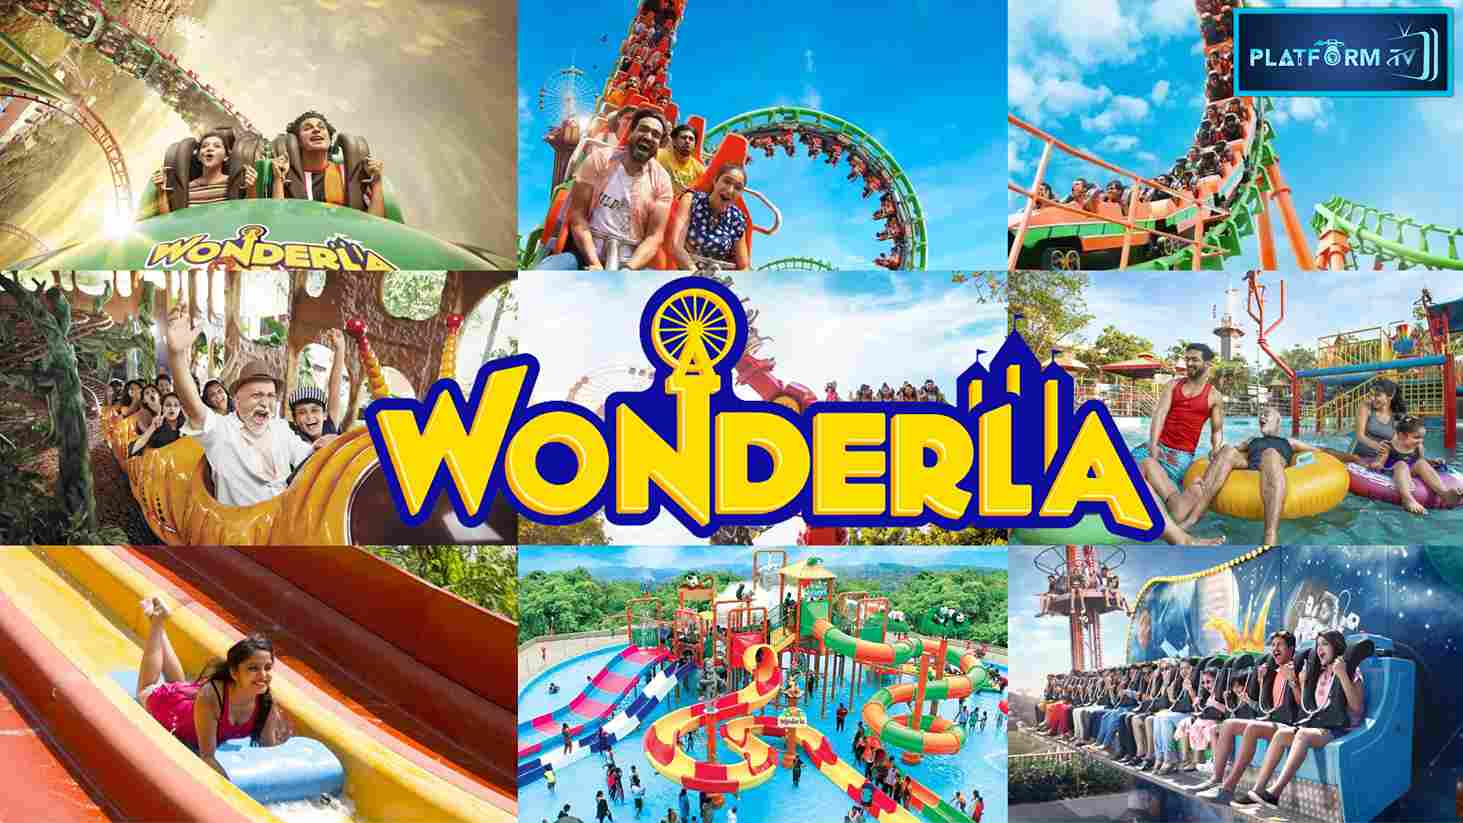 Wonderla Theme Park Chennai - Platform Tamil